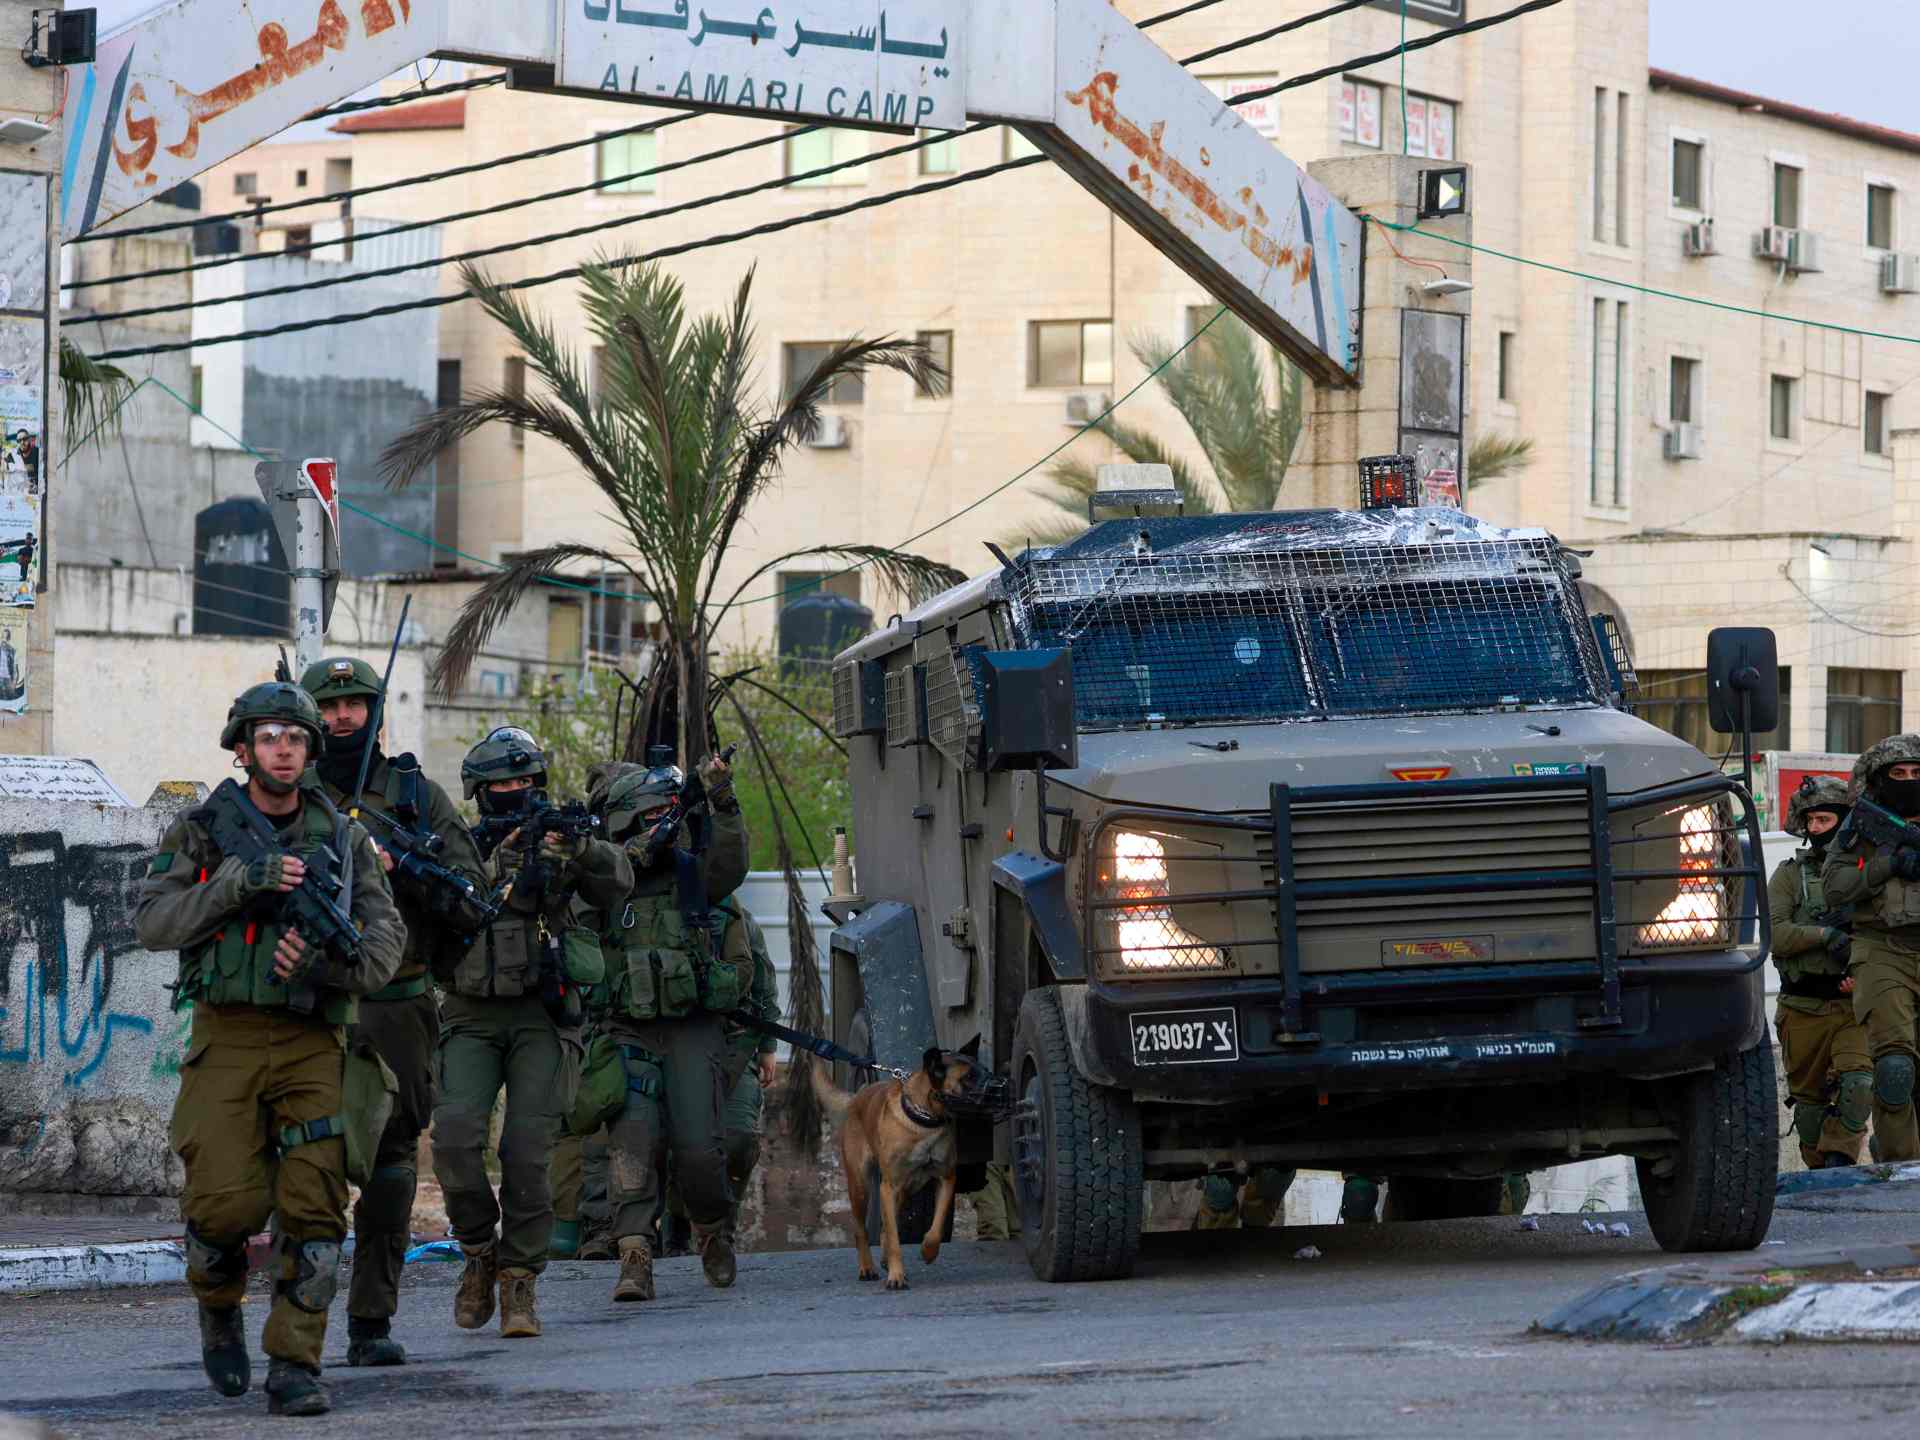 الاحتلال يغتال فلسطينيا في الضفة والسلطة تطالب بحماية دولية | أخبار – البوكس نيوز